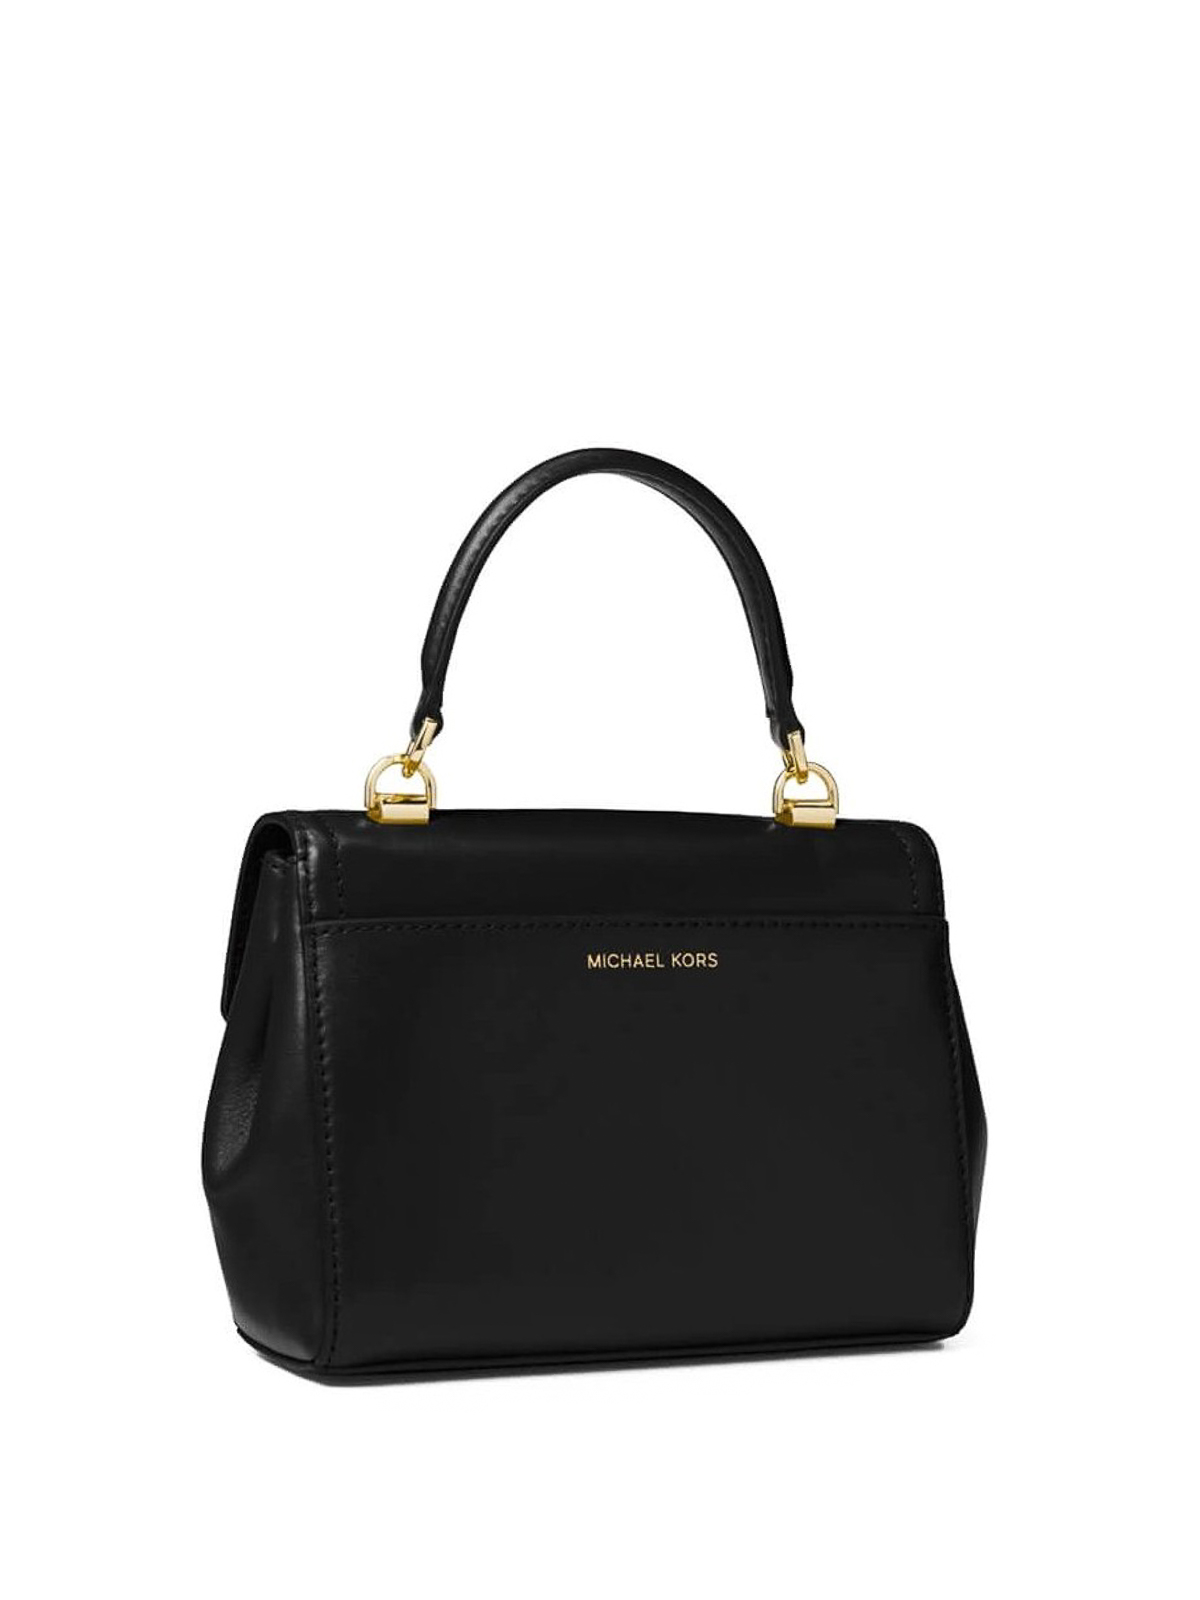 Michael Kors Ava Small Crossbody Handbag in Black